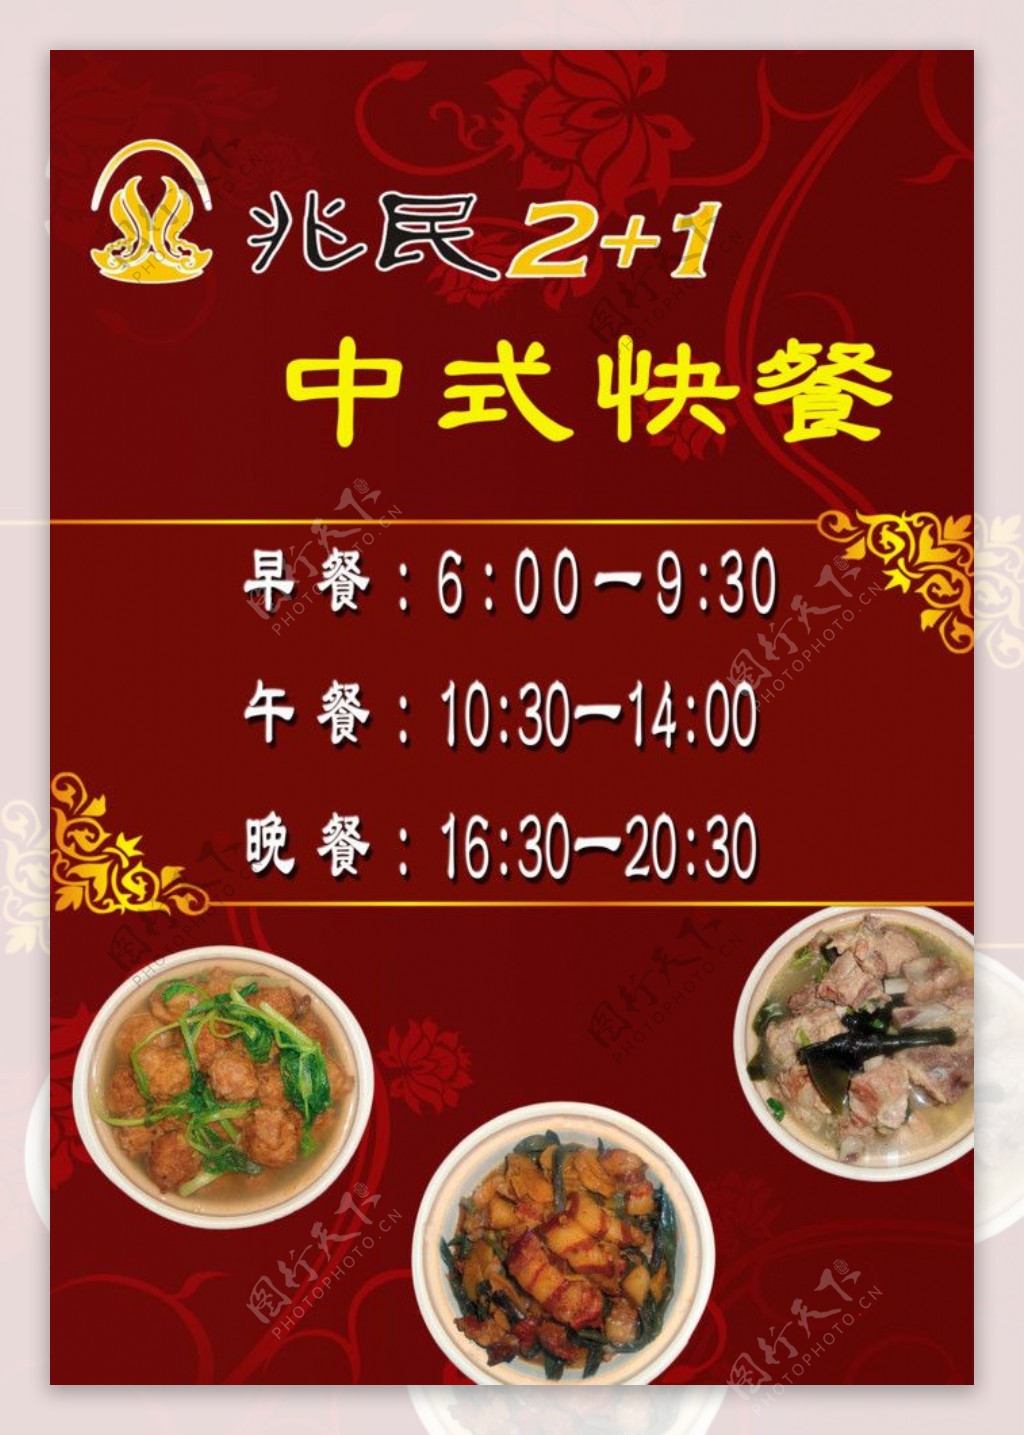 中式快餐活动海报图片